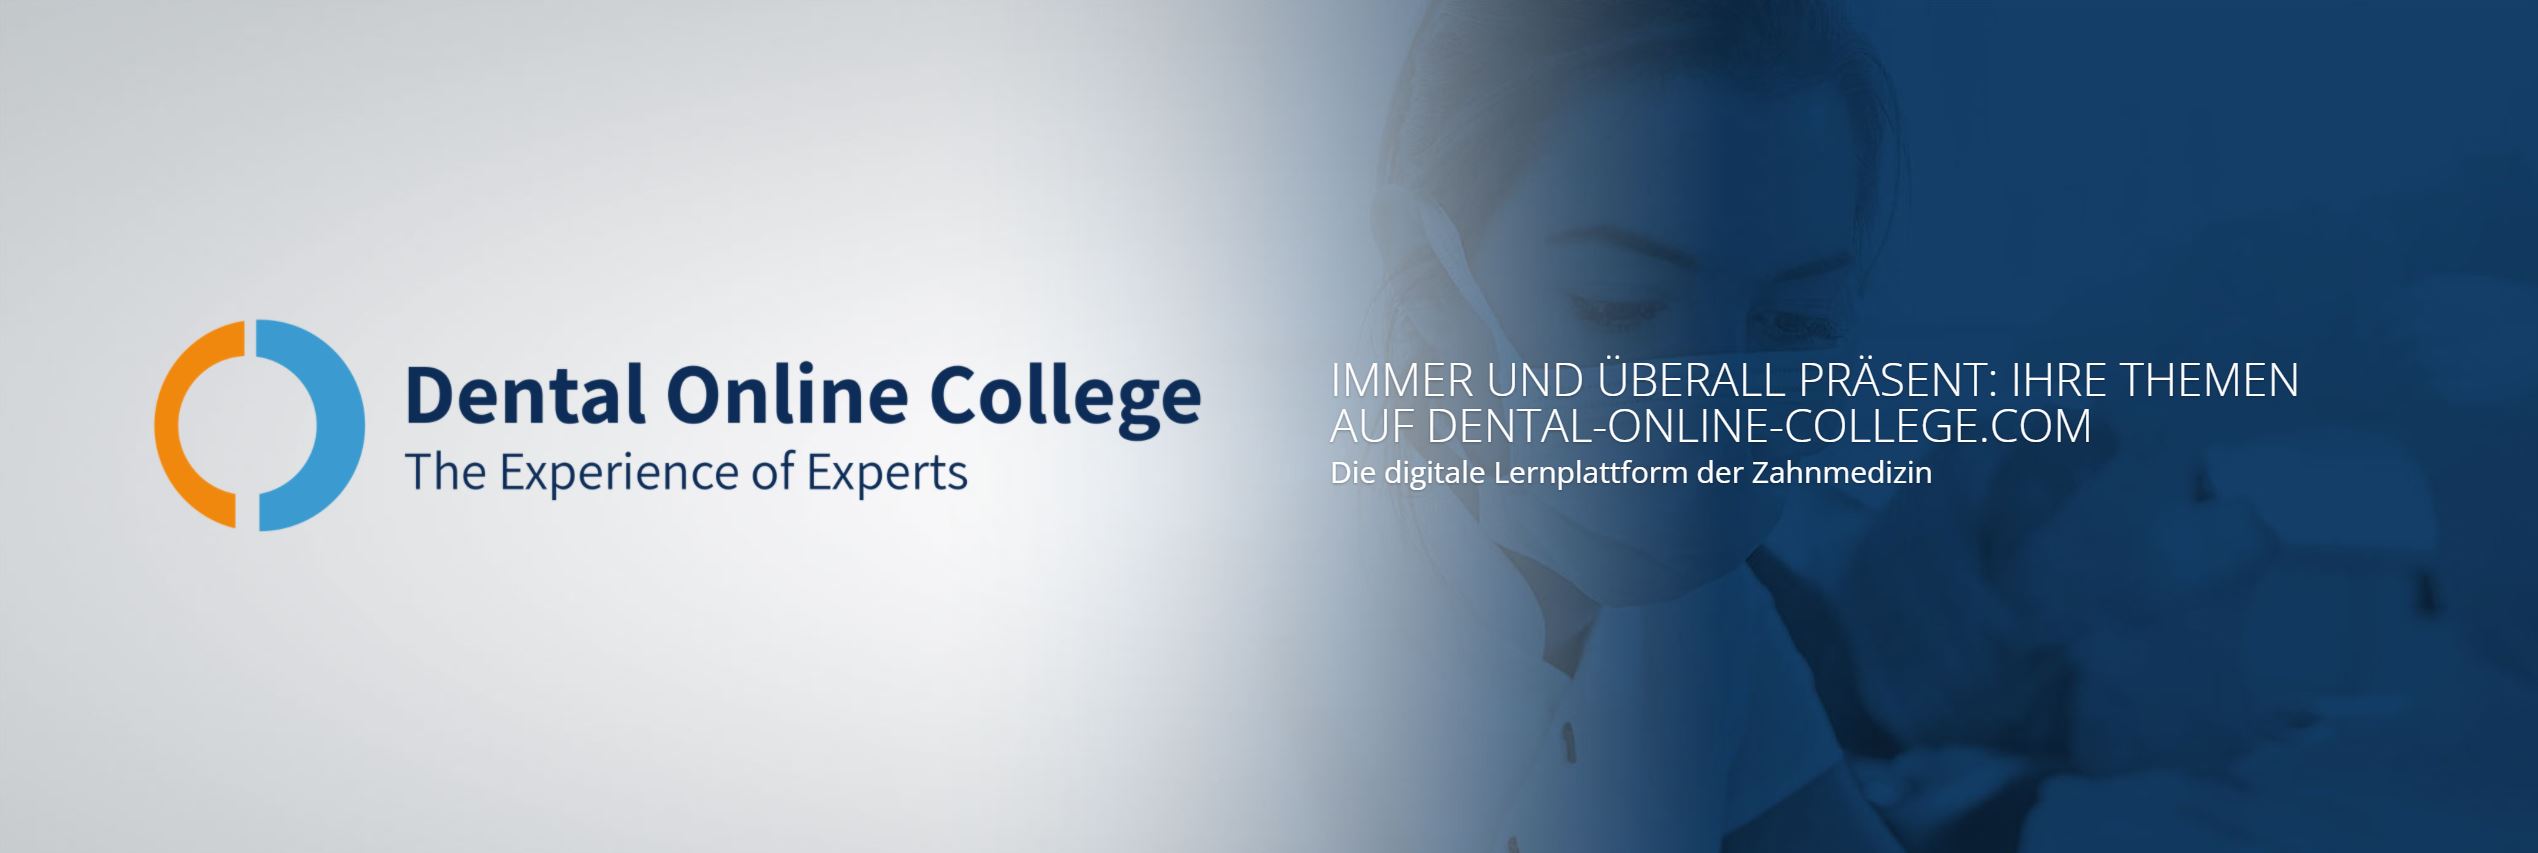 Das Bild zeigt den Banner des Dental Online College.